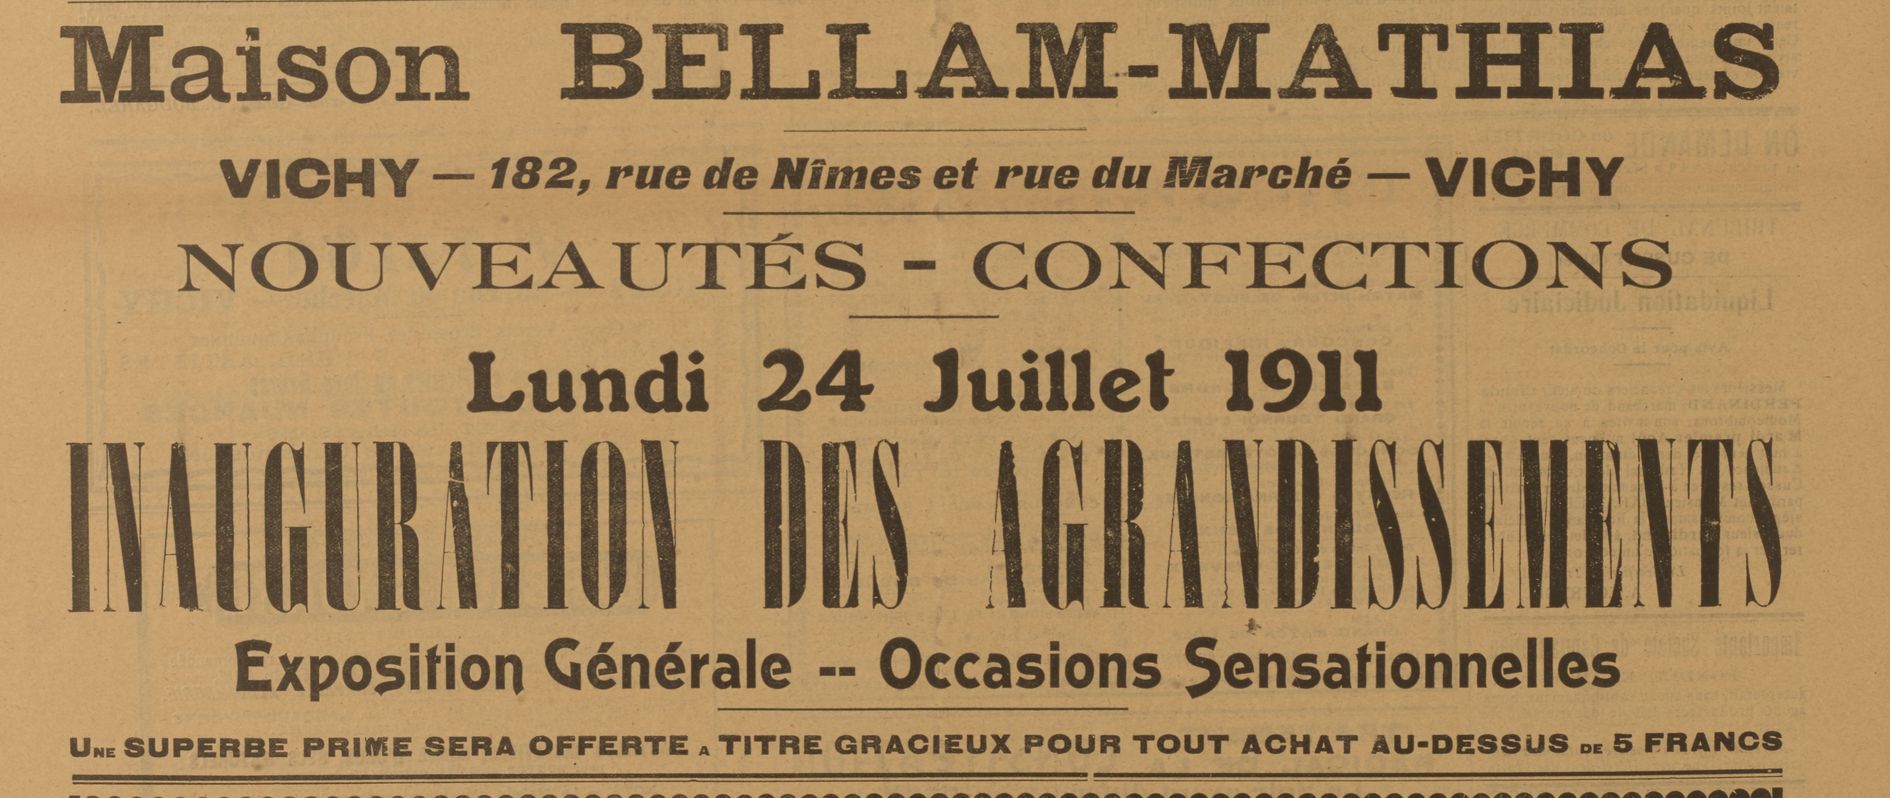 Avenir de Vichy 1911 07 23